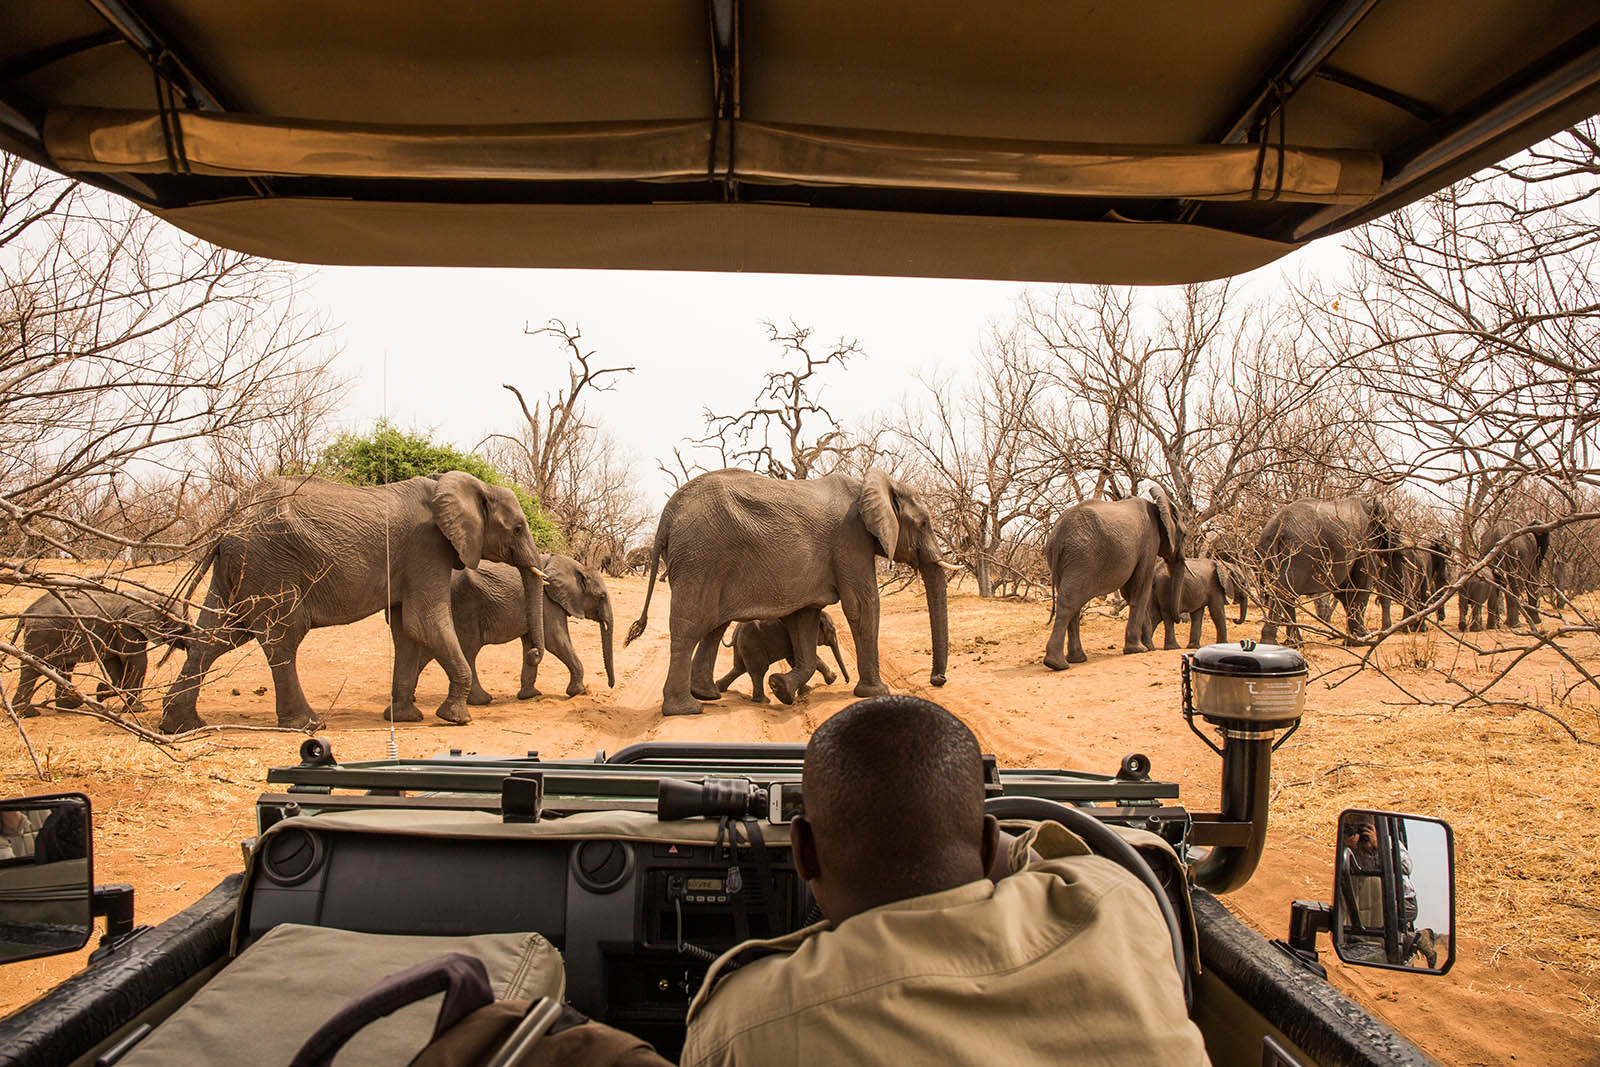 Manada de elefantes cruzando el camino